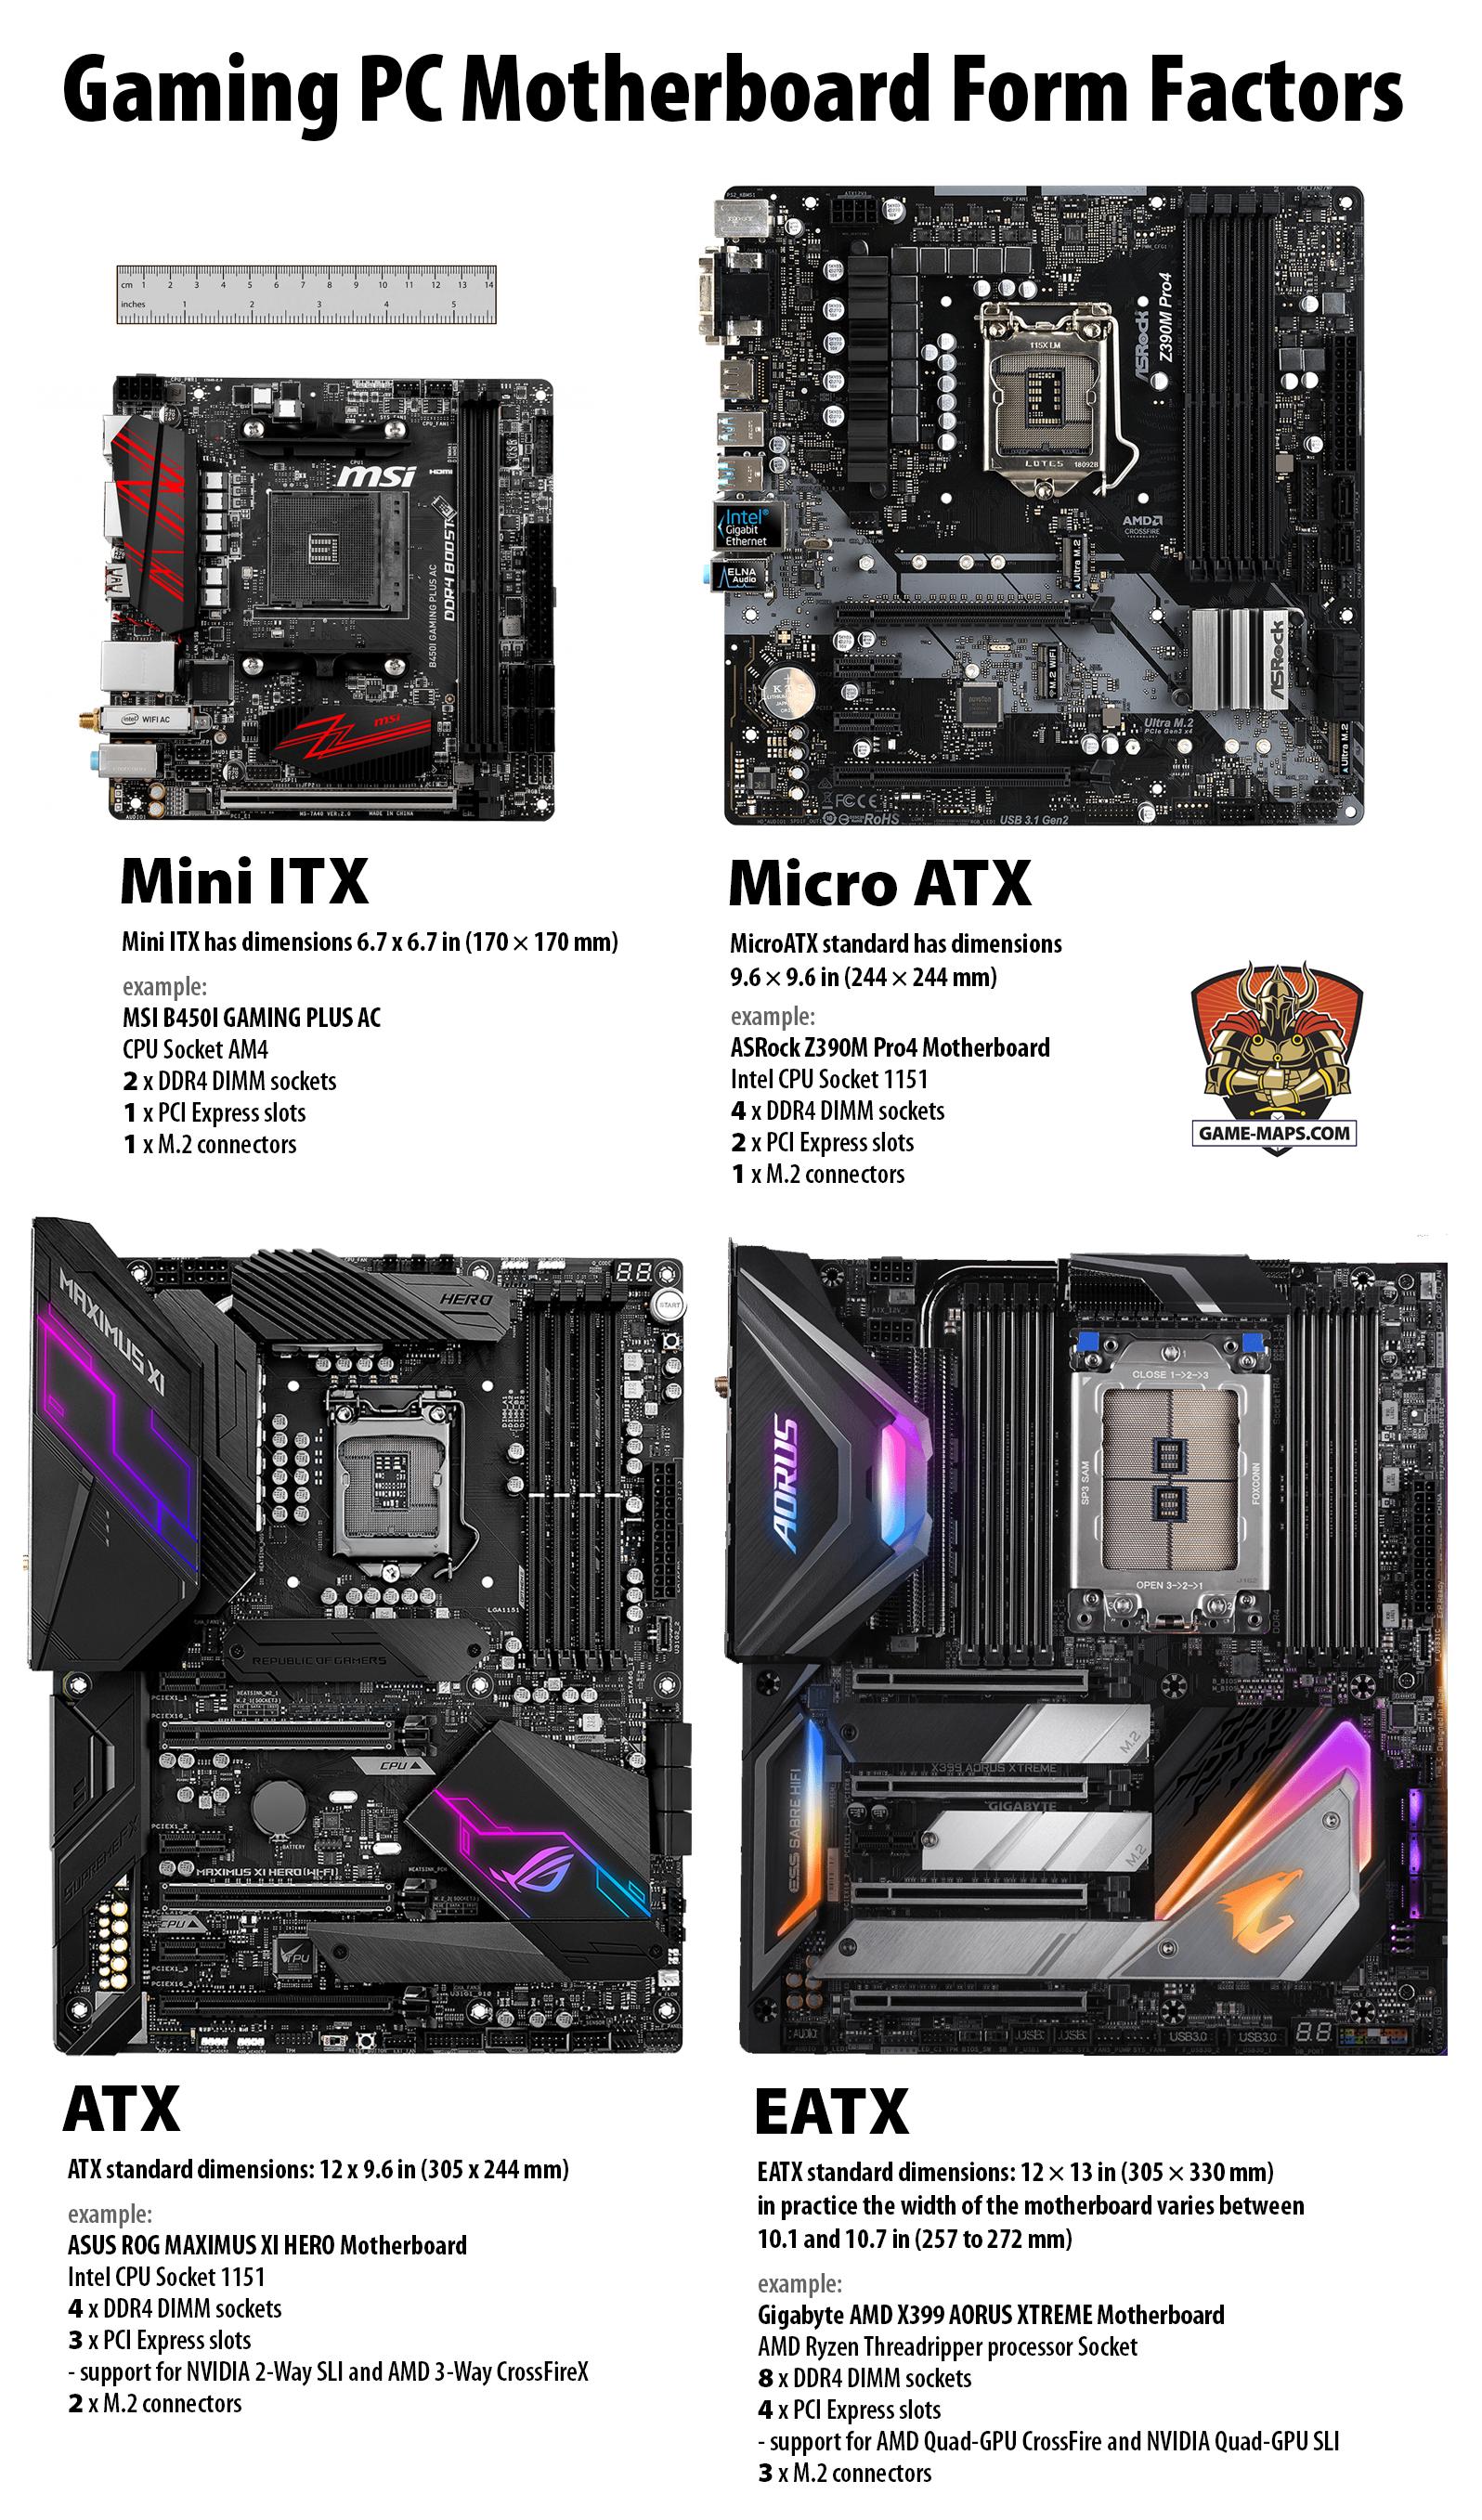 Gaming PC Motherboard Form Factors Comparison, ATX, EATX, Micro ATX, Mini ITX.